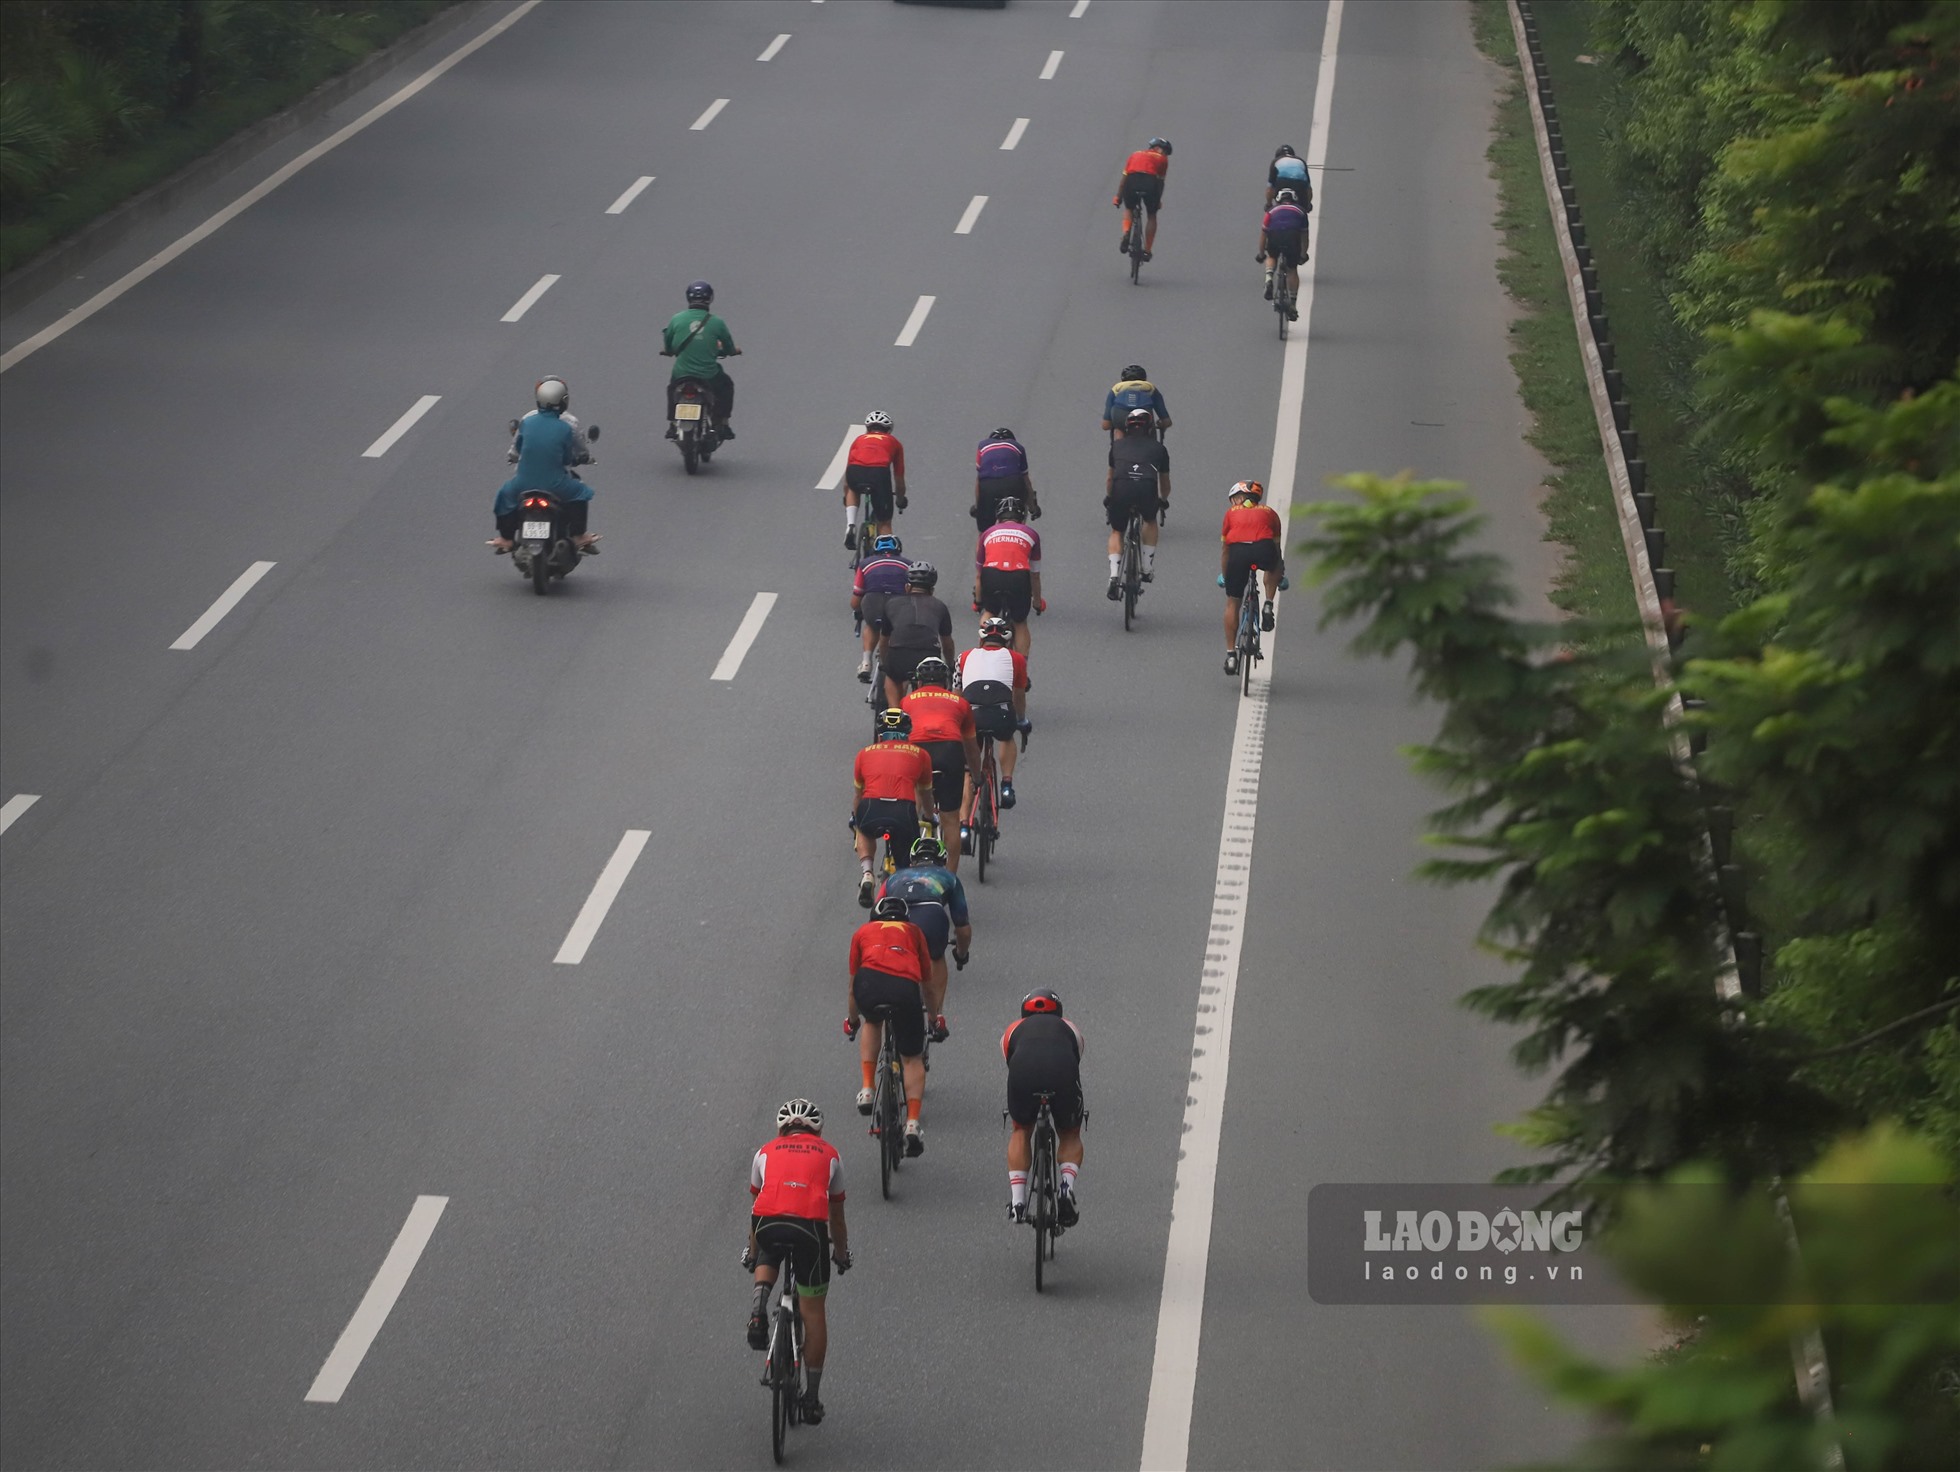 Tuy nhiên, đến nay, tình trạng đoàn người đạp xe thể dục sáng sớm vào làn đường cấm, đường cao tốc vẫn tiếp diễn.